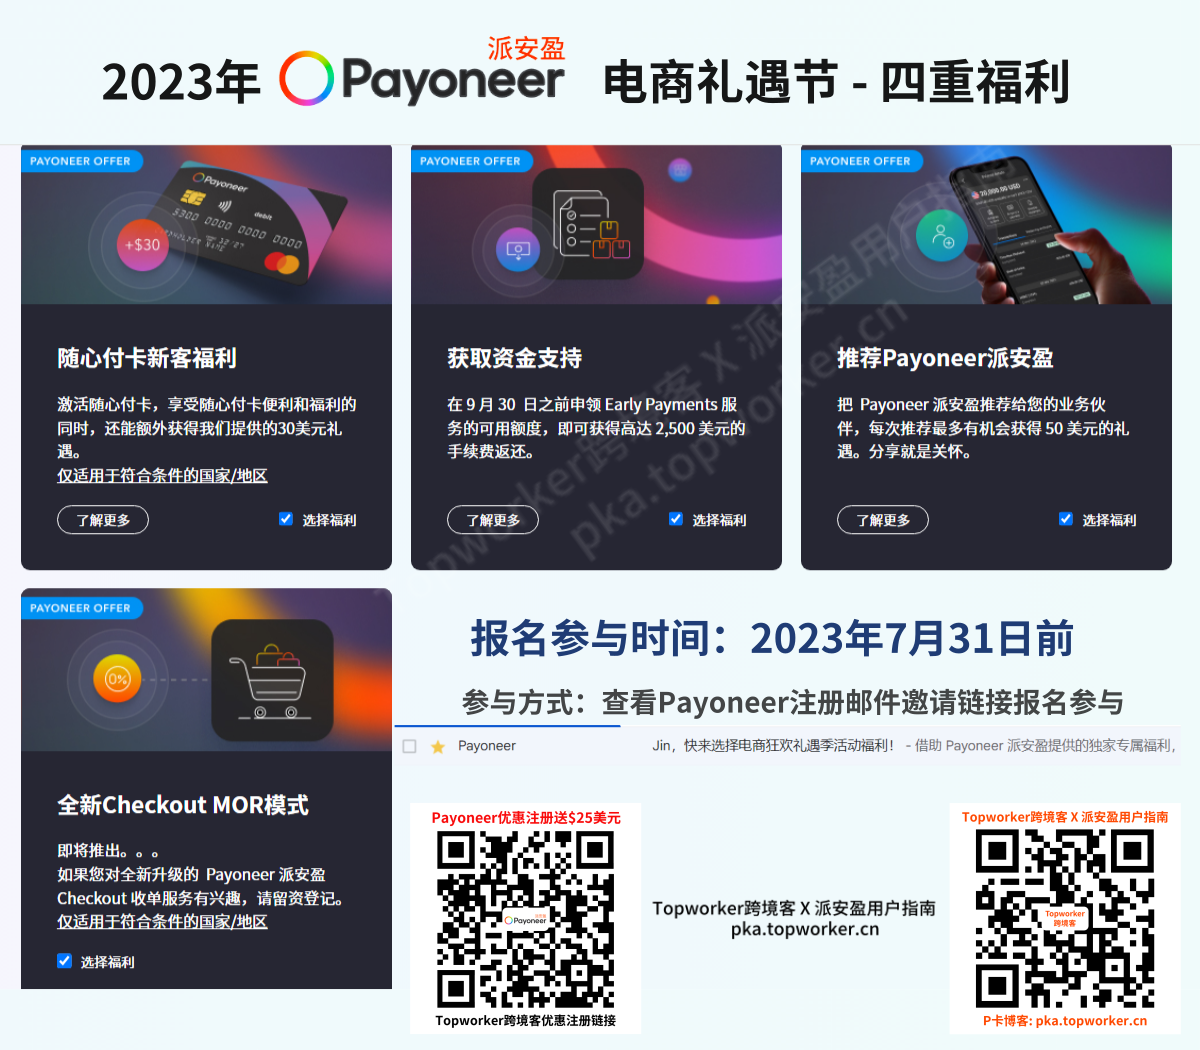 2023年Payoneer电商节-四重福利示意